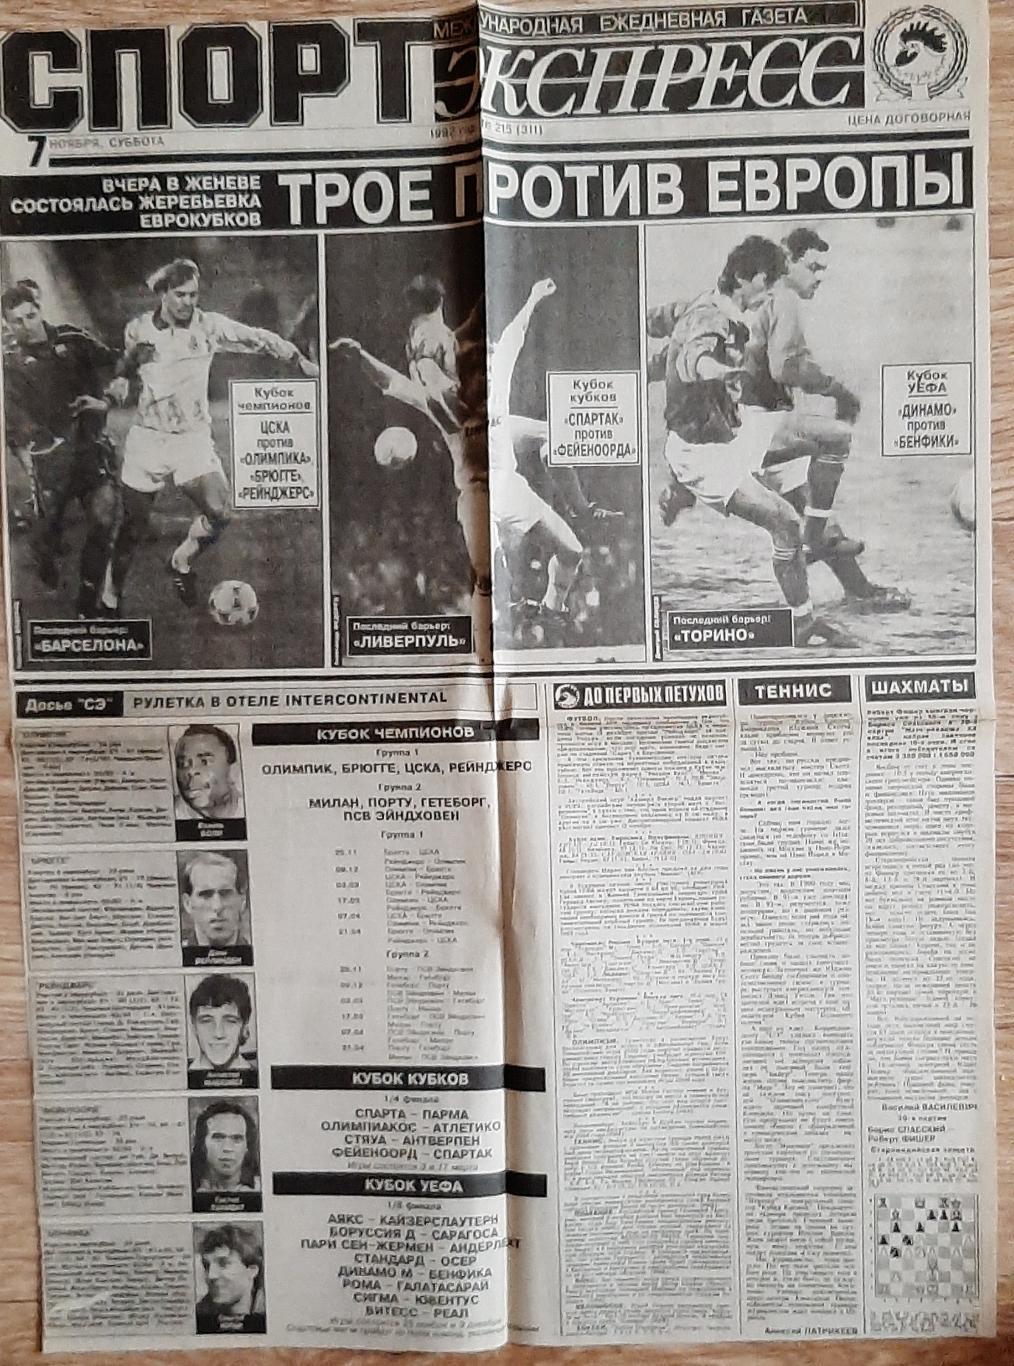 Вирізка з газети Спорт експрес #215 (7 листопада 1992) Інтерв'ю А.Баль